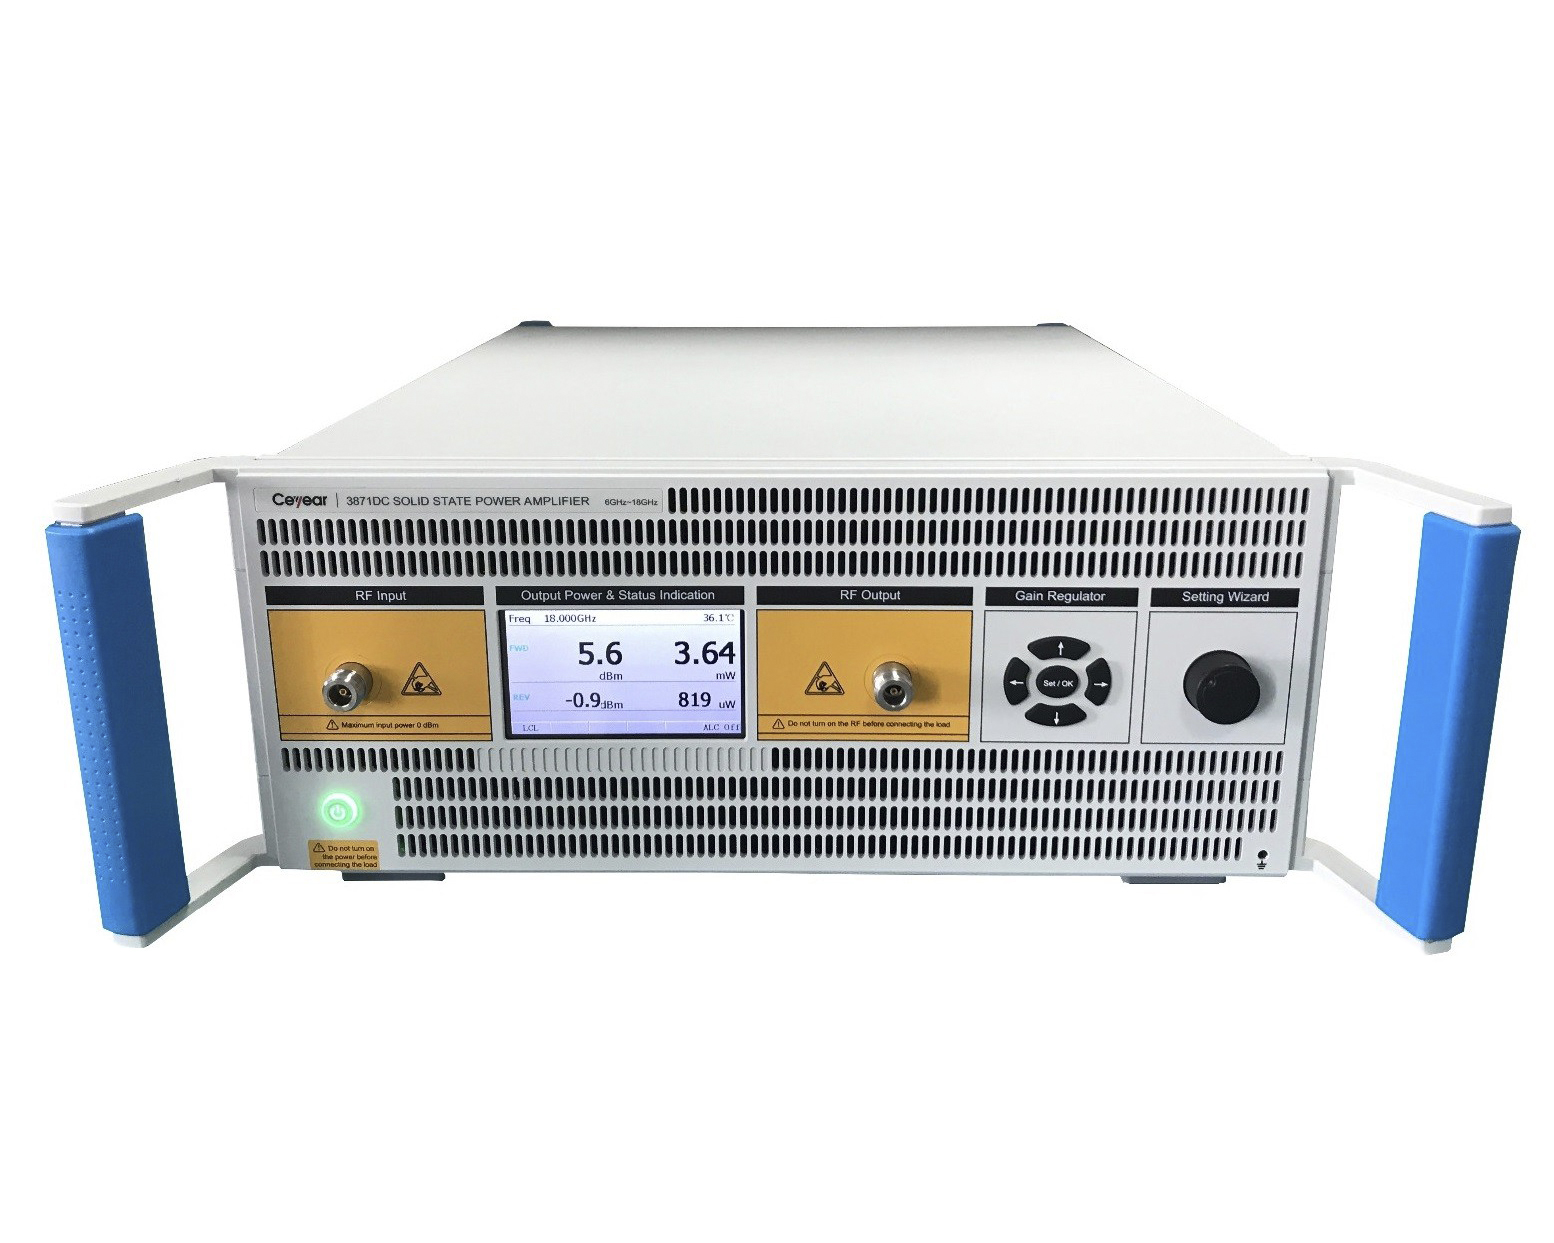 Твердотельные усилители мощности <b>Ceyear серии 387XX</b> с диапазоном частот от 9 кГц до 110 ГГц